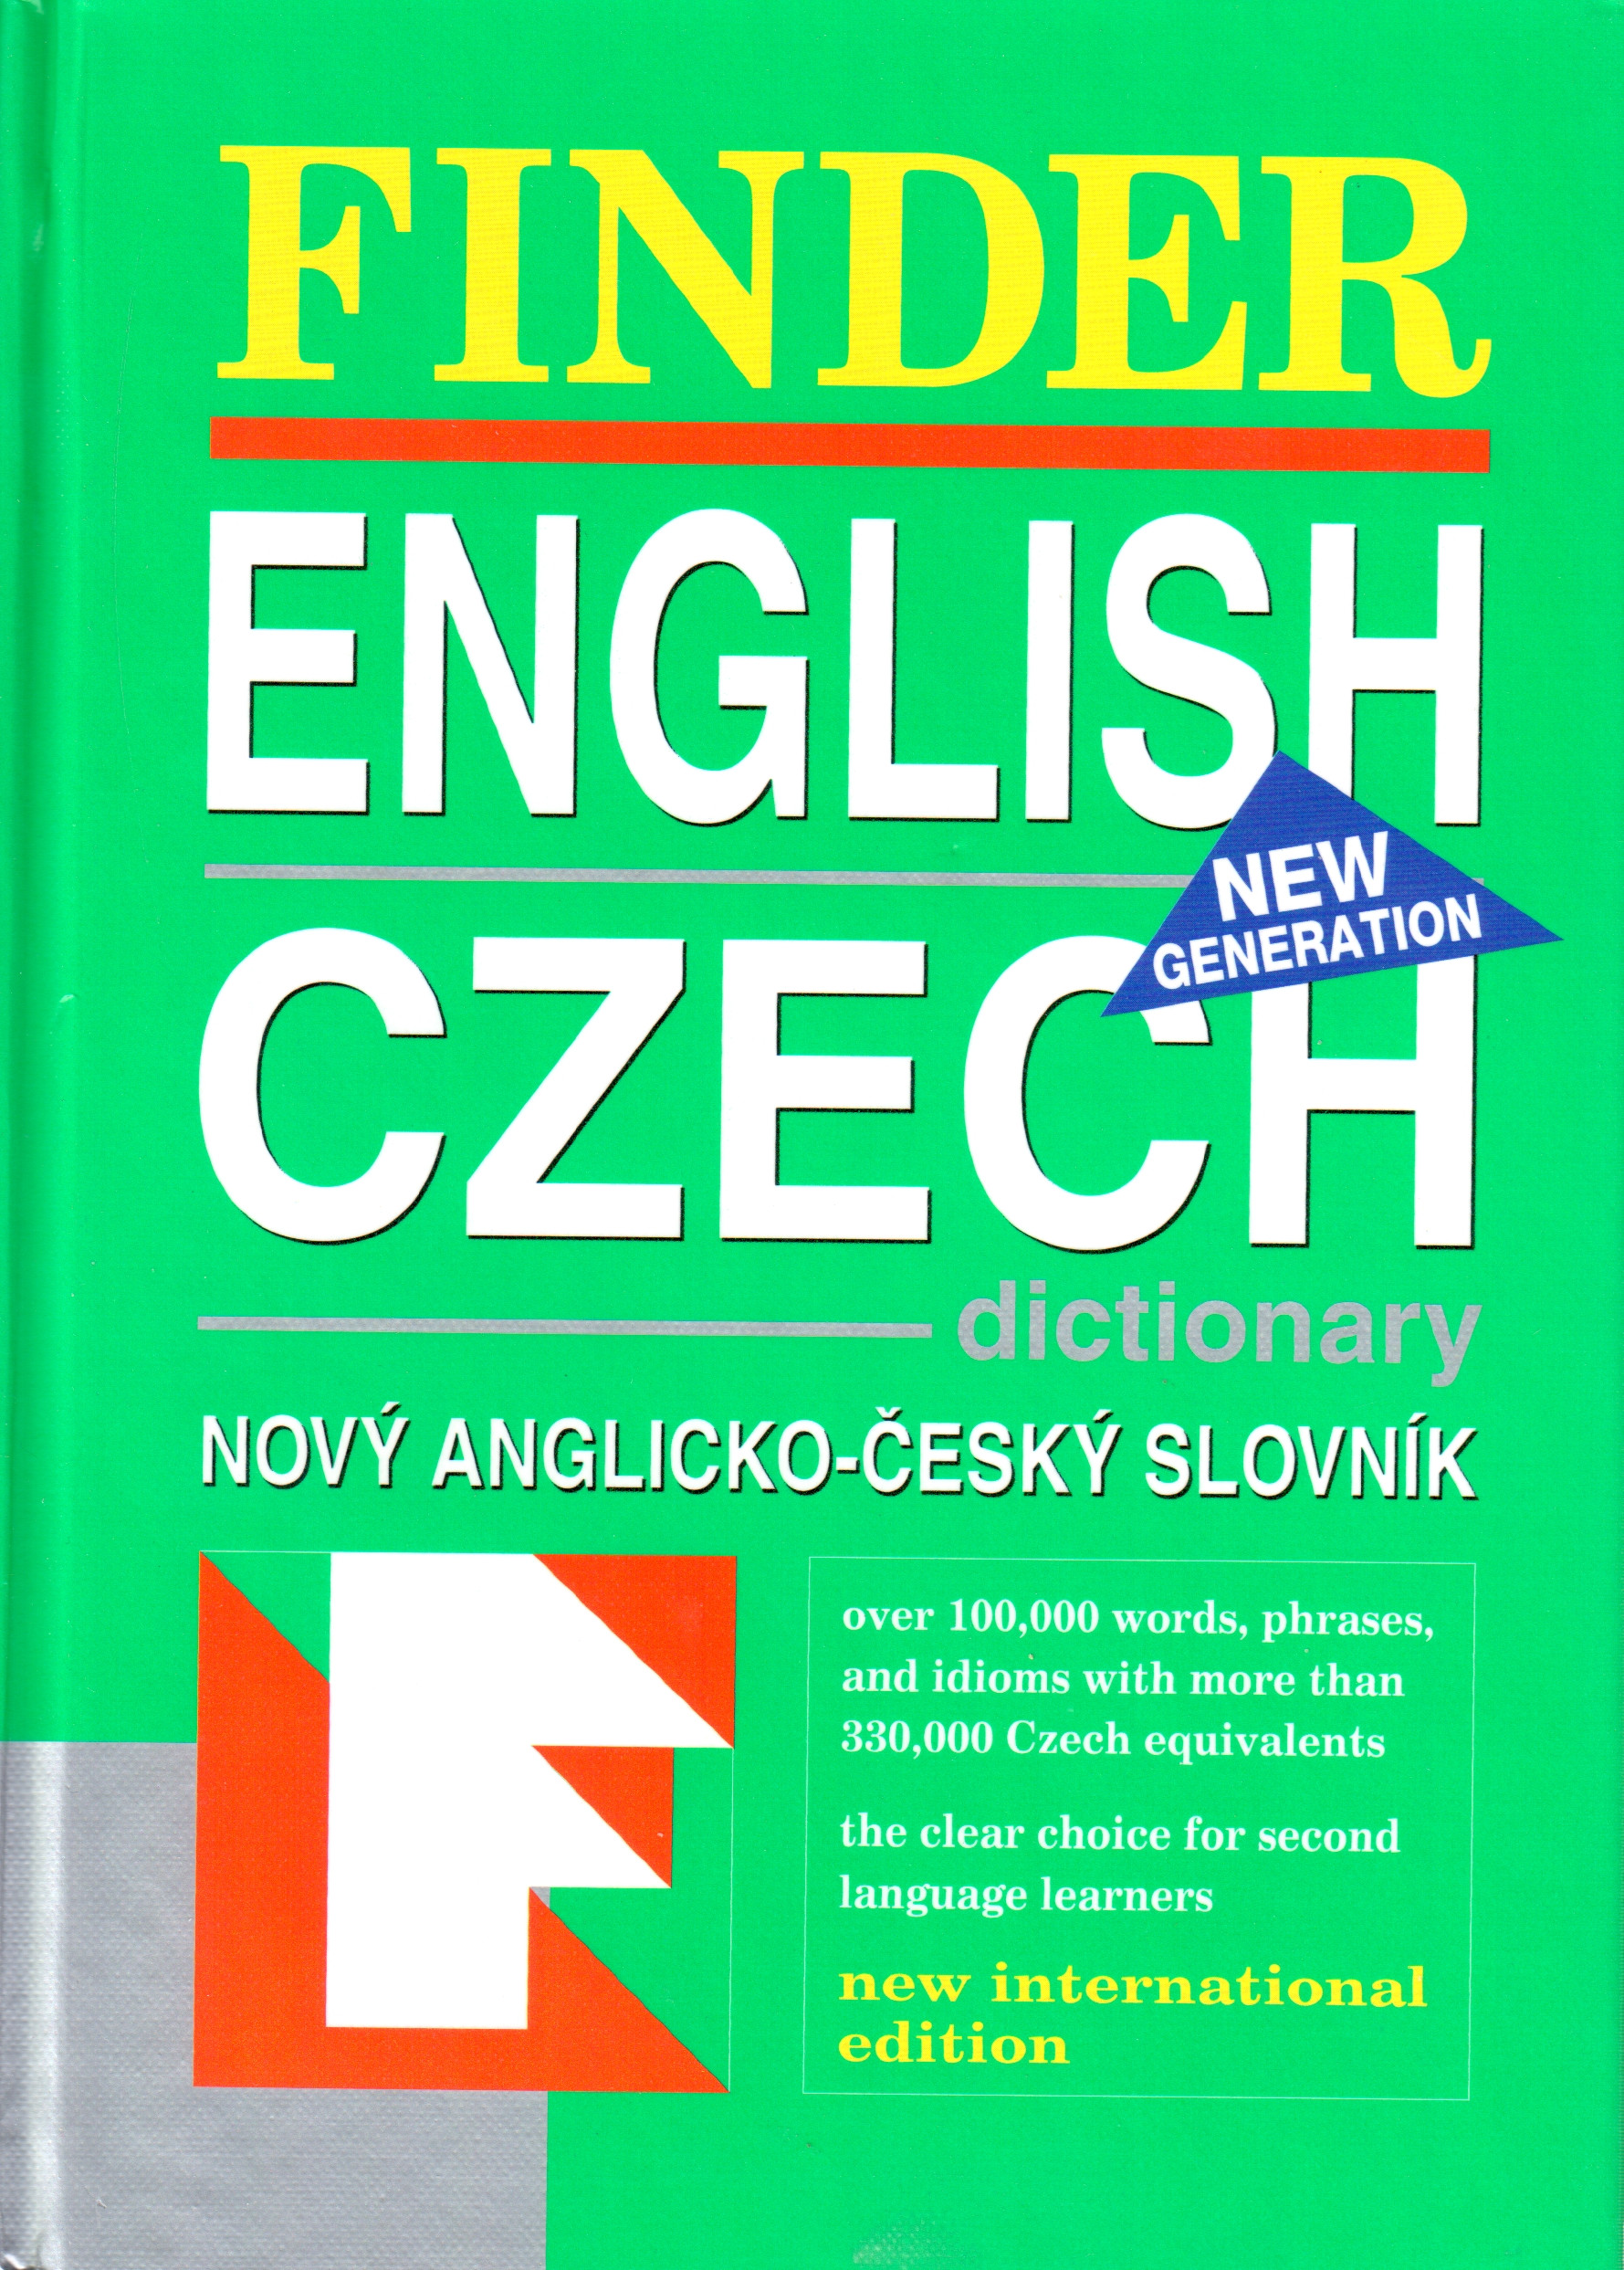 Finder Englisch Czech (anglicko-český slovník) - Náhled učebnice